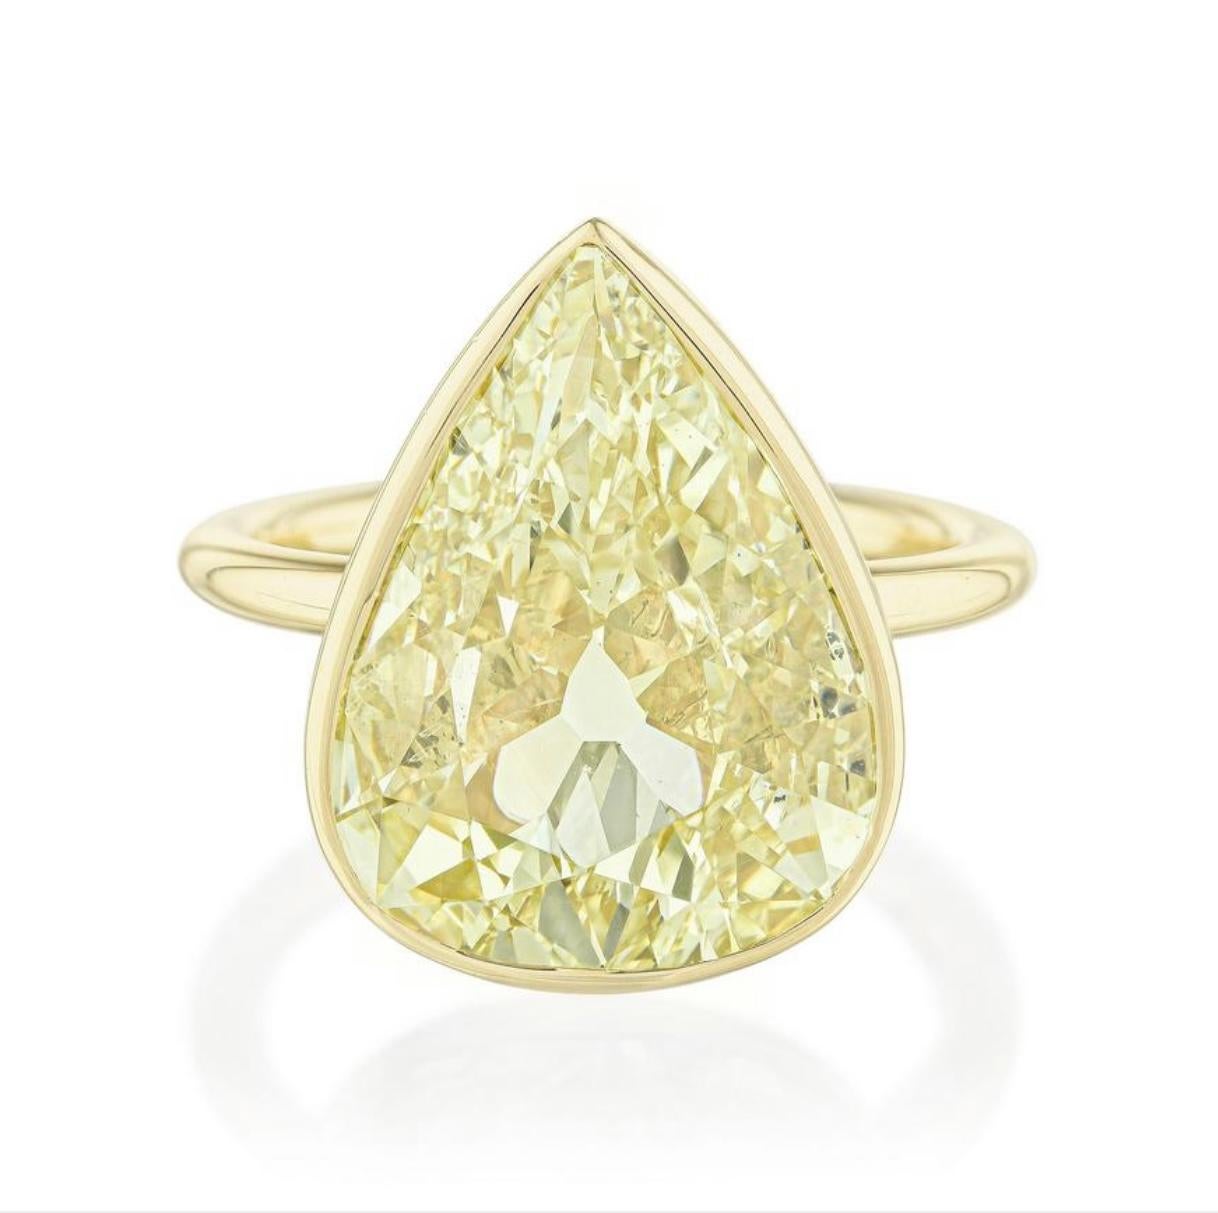 GIA-zertifiziert Fancy gelbe Birne Form Diamant-Ring in 18k Gelbgold schön in 18k Gelbgold gefertigt. 

Die Einzelheiten sind wie folgt: 
Gewicht des birnenförmigen Diamanten: 6,02 Karat
Farbe : Fancy gelb 
Reinheit : SI1 
Abmessungen :